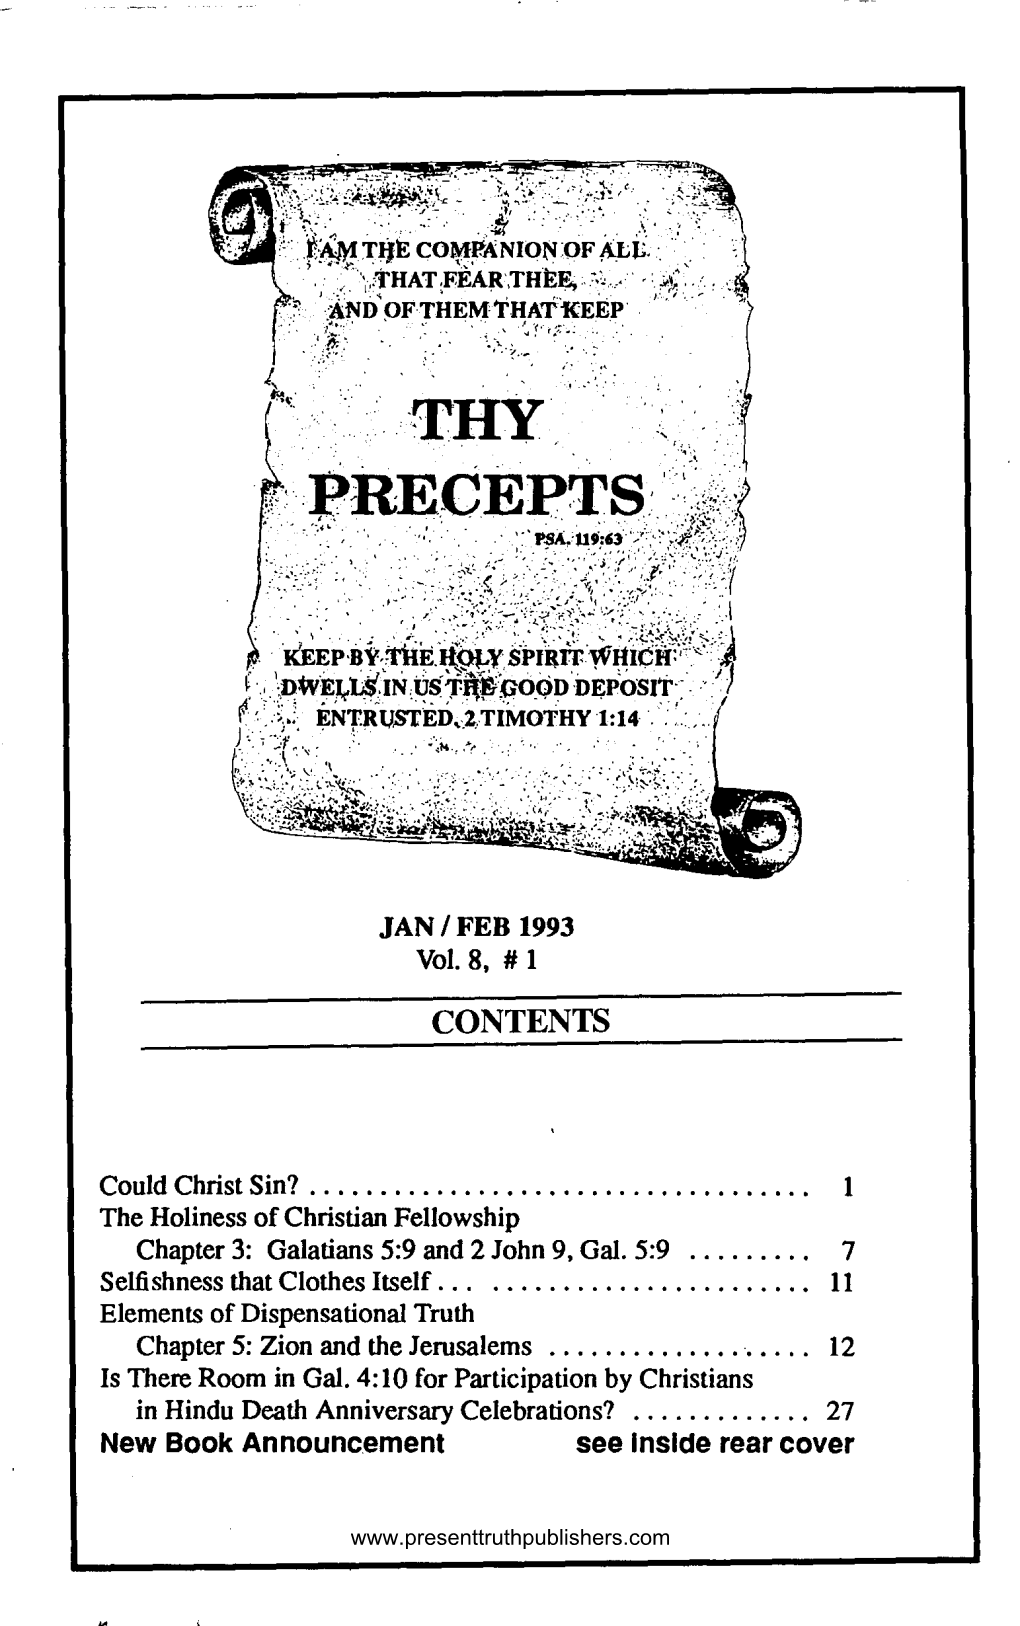 Thy Precepts Vol 8 # 1, Jan/Feb 1993